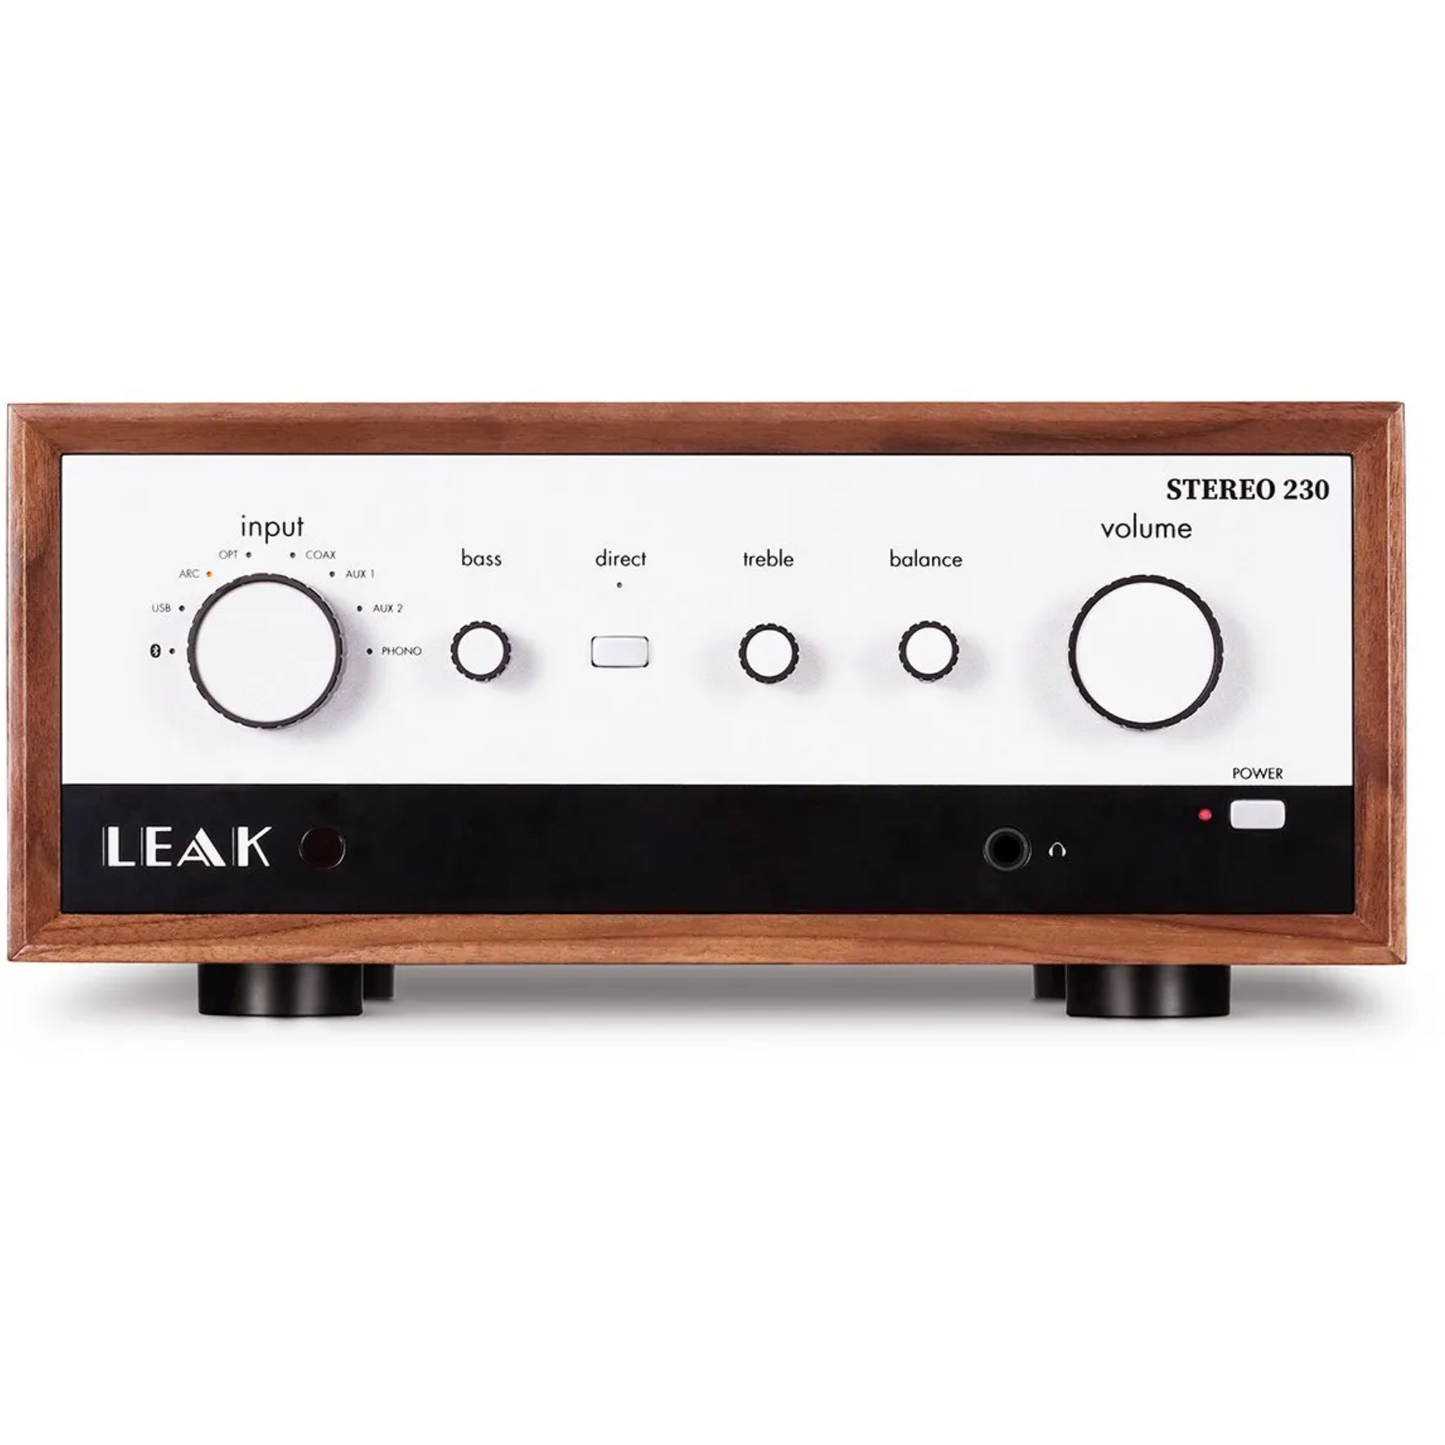 LEAK – Stereo 230 Integrierter Verstärker